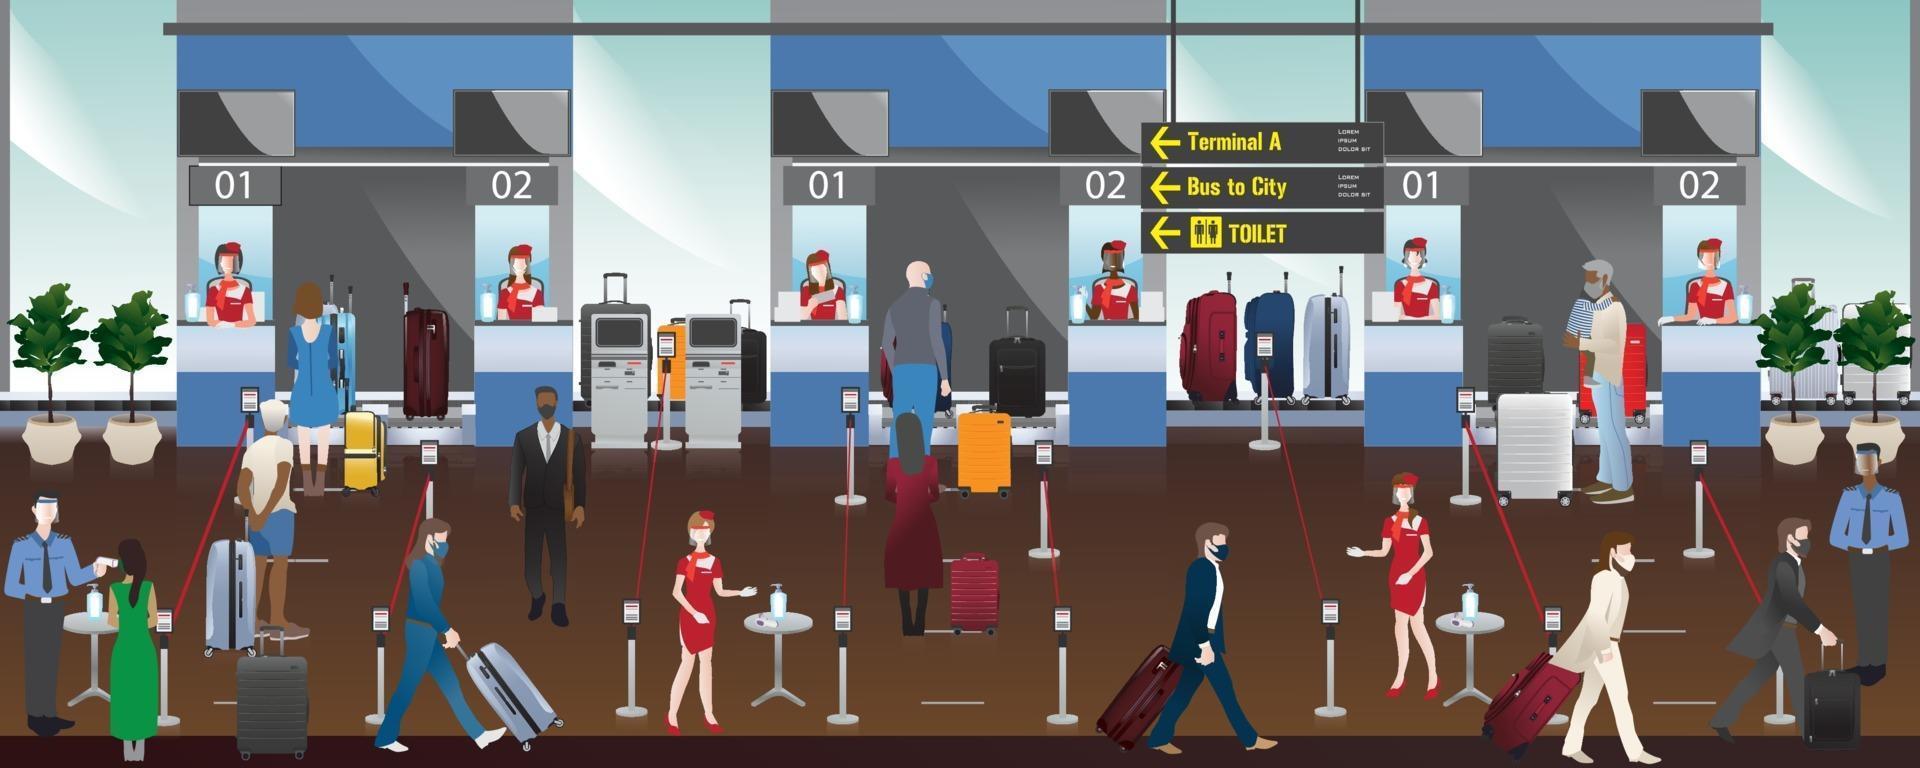 funcionários do aeroporto e passageiros nas zonas de check-in do aeroporto, distanciamento social evita covid-19, ilustração plana de alta qualidade. vetor